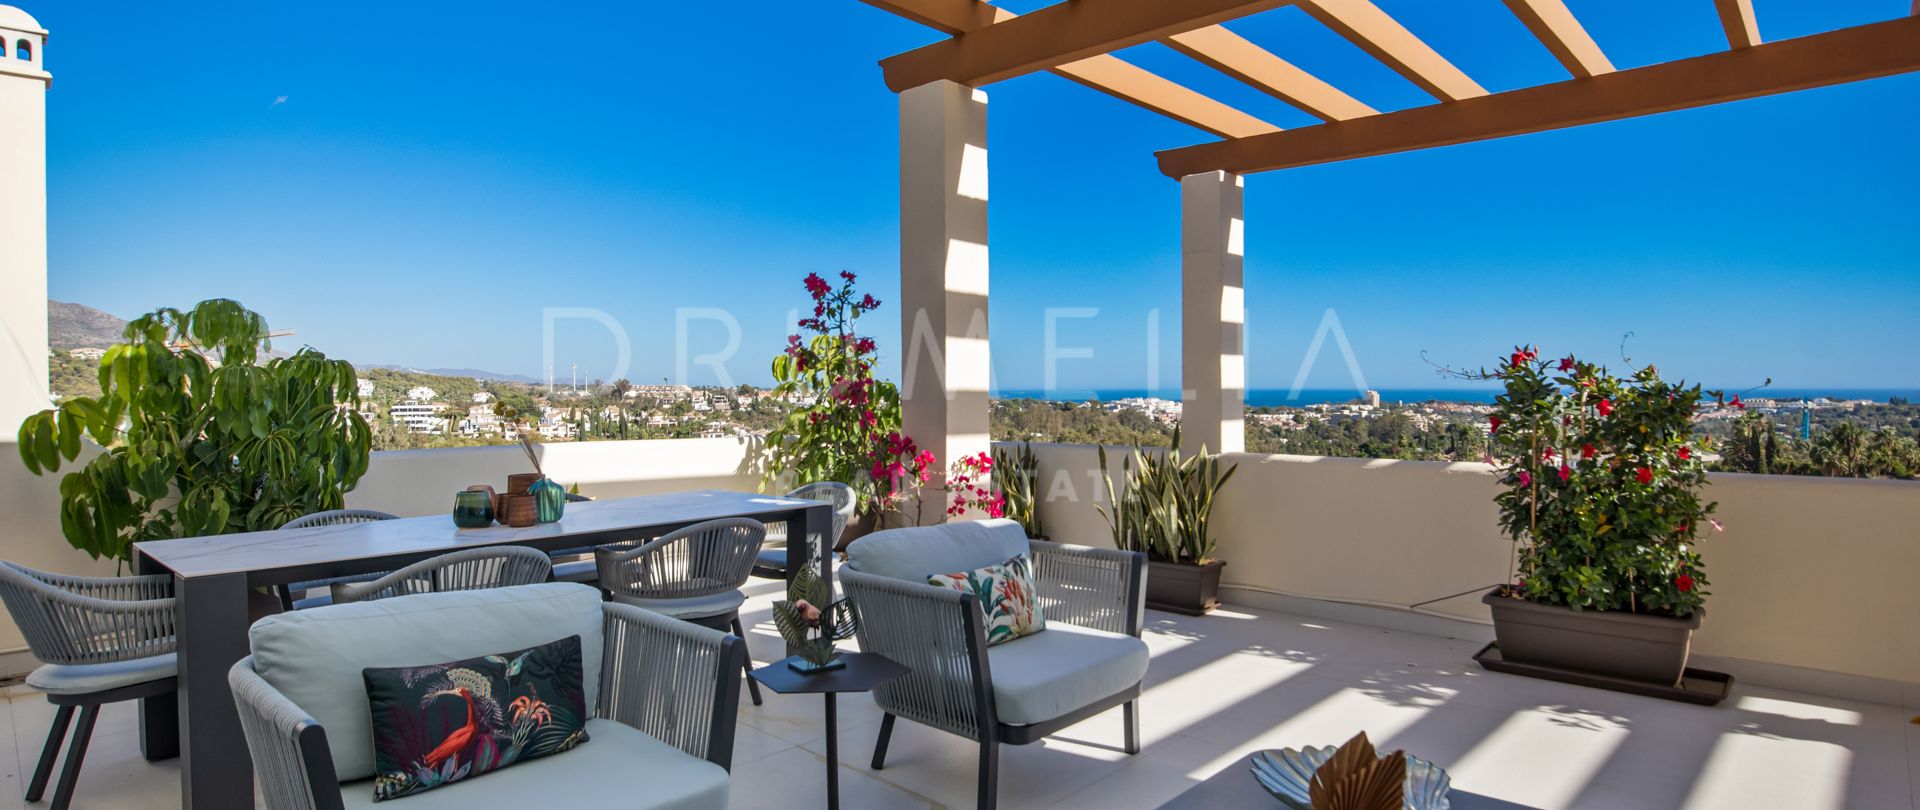 Penthouse moderne de luxe en duplex rénové avec une vue imprenable sur la mer et les montagnes à Los Belvederes, Nueva Andalucía, Marbella.